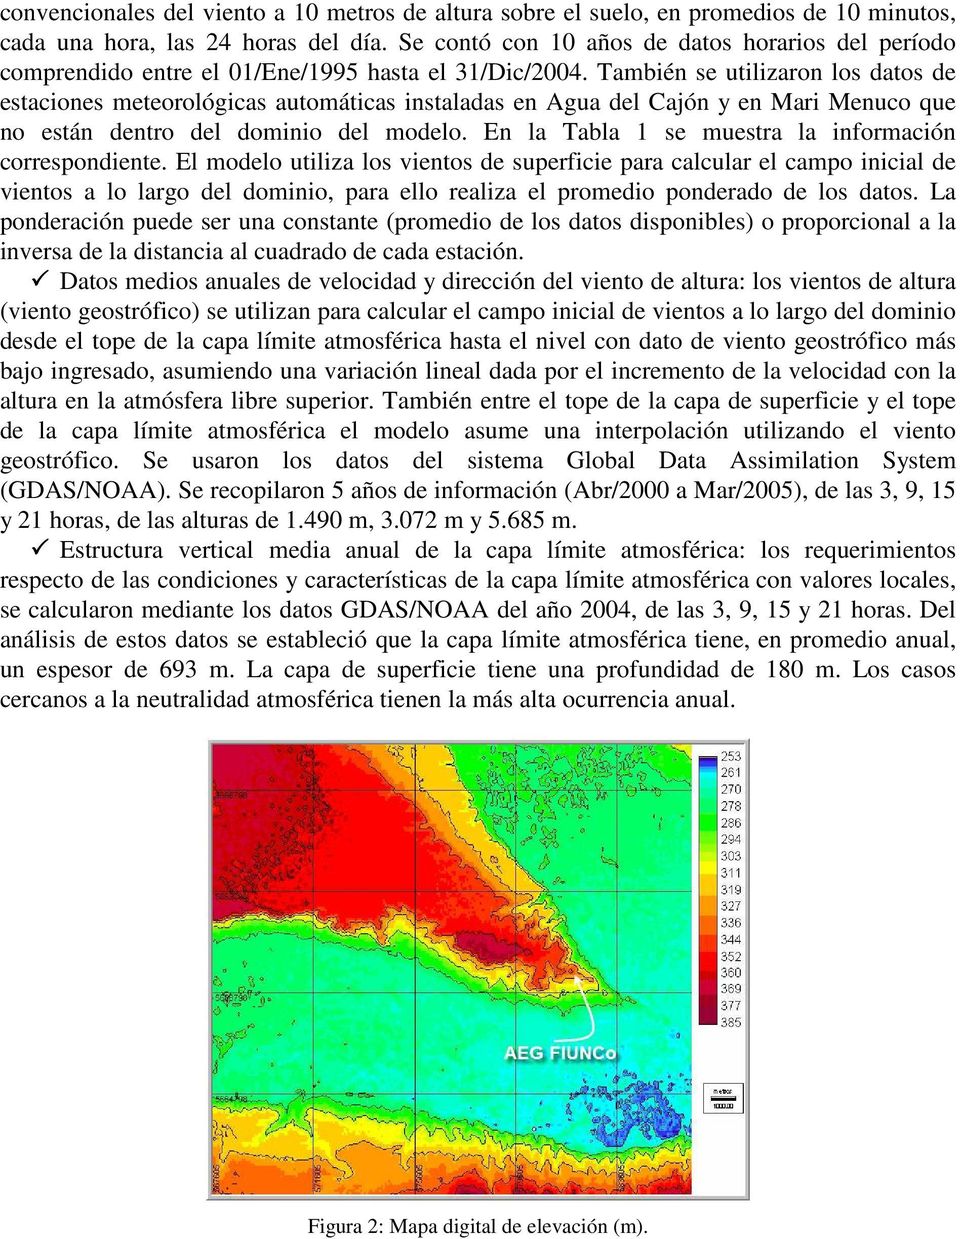 También se utilizaron los datos de estaciones meteorológicas automáticas instaladas en Agua del Cajón y en Mari Menuco que no están dentro del dominio del modelo.